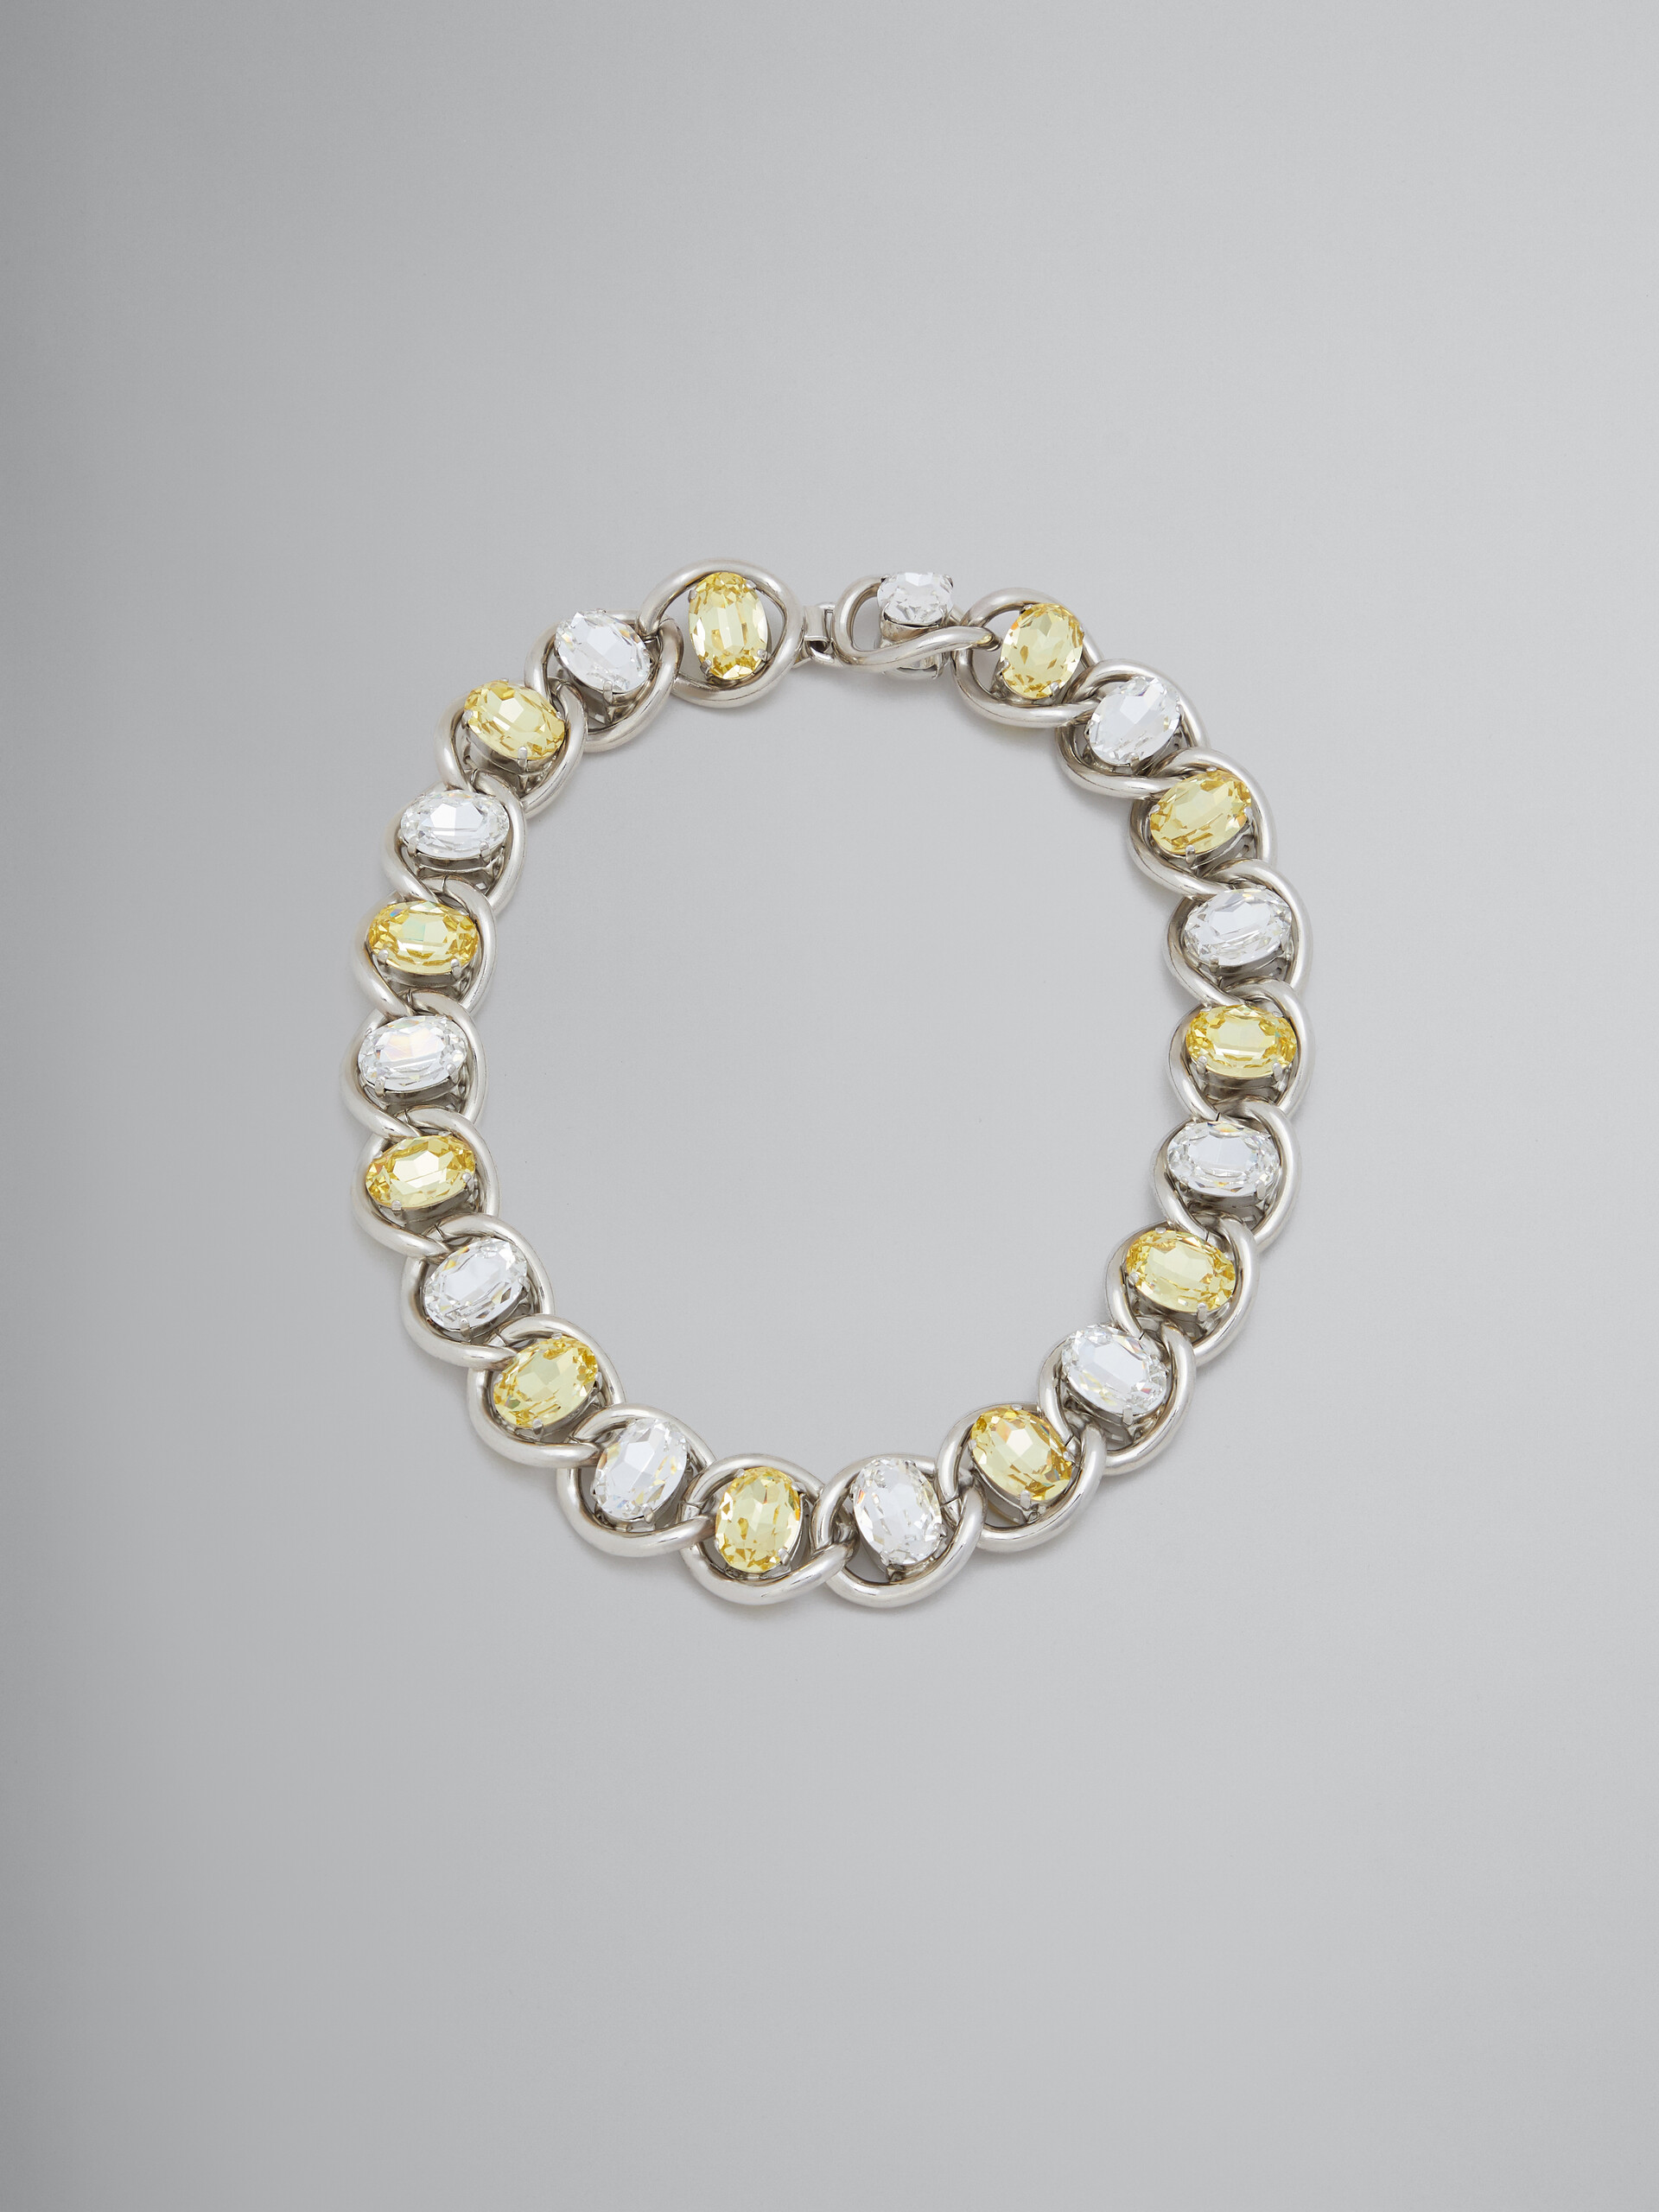 Collar grueso de cadena con strass transparente y amarillo - Collares - Image 1